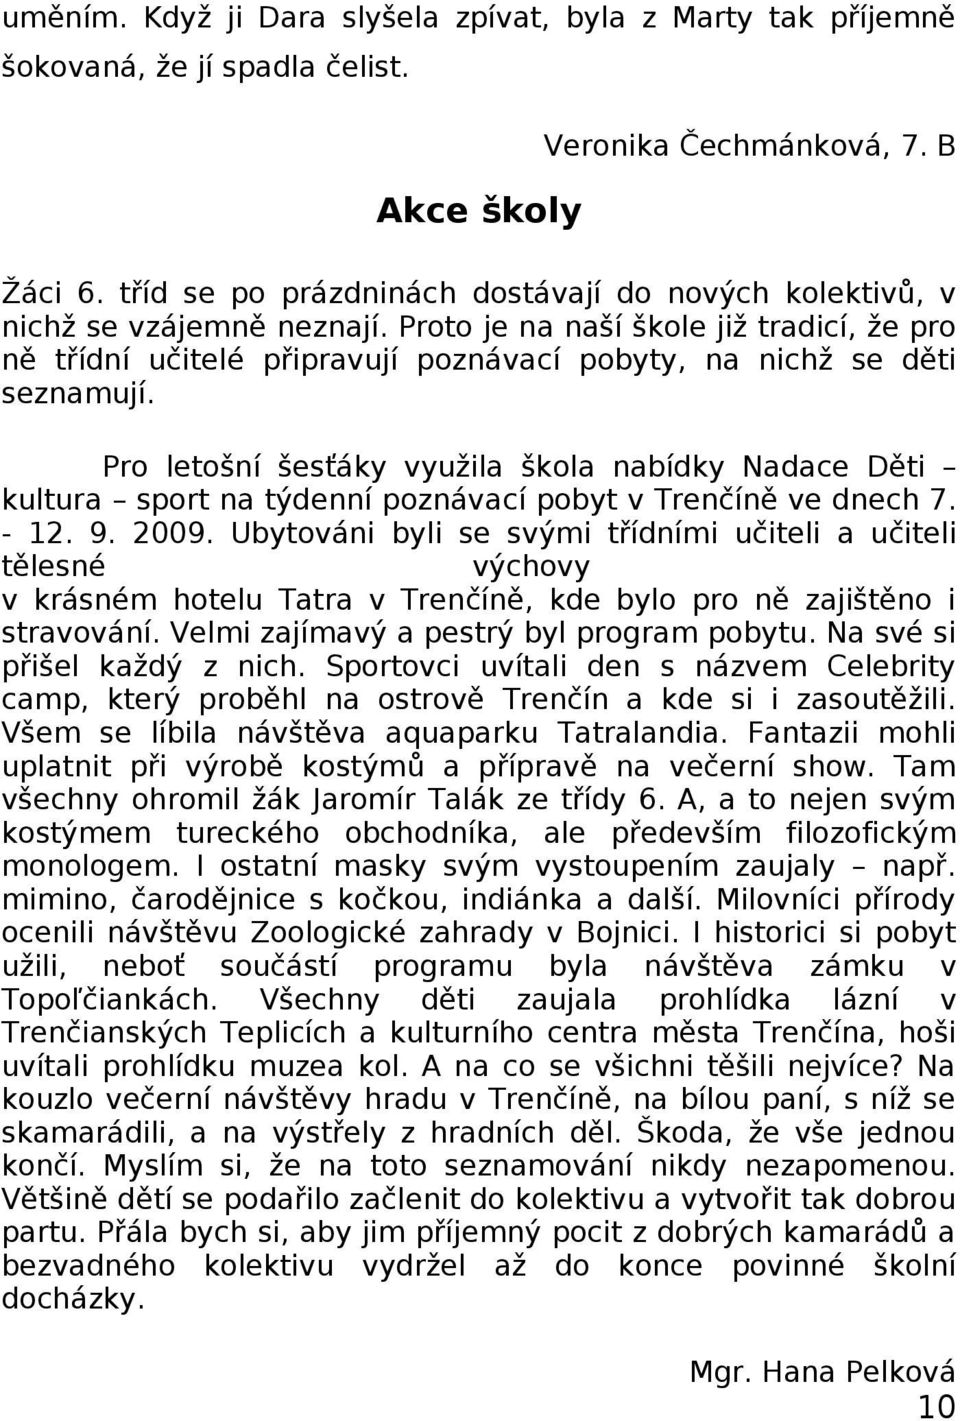 Pro letošní šesťáky využila škola nabídky Nadace Děti kultura sport na týdenní poznávací pobyt v Trenčíně ve dnech 7. - 12. 9. 2009.